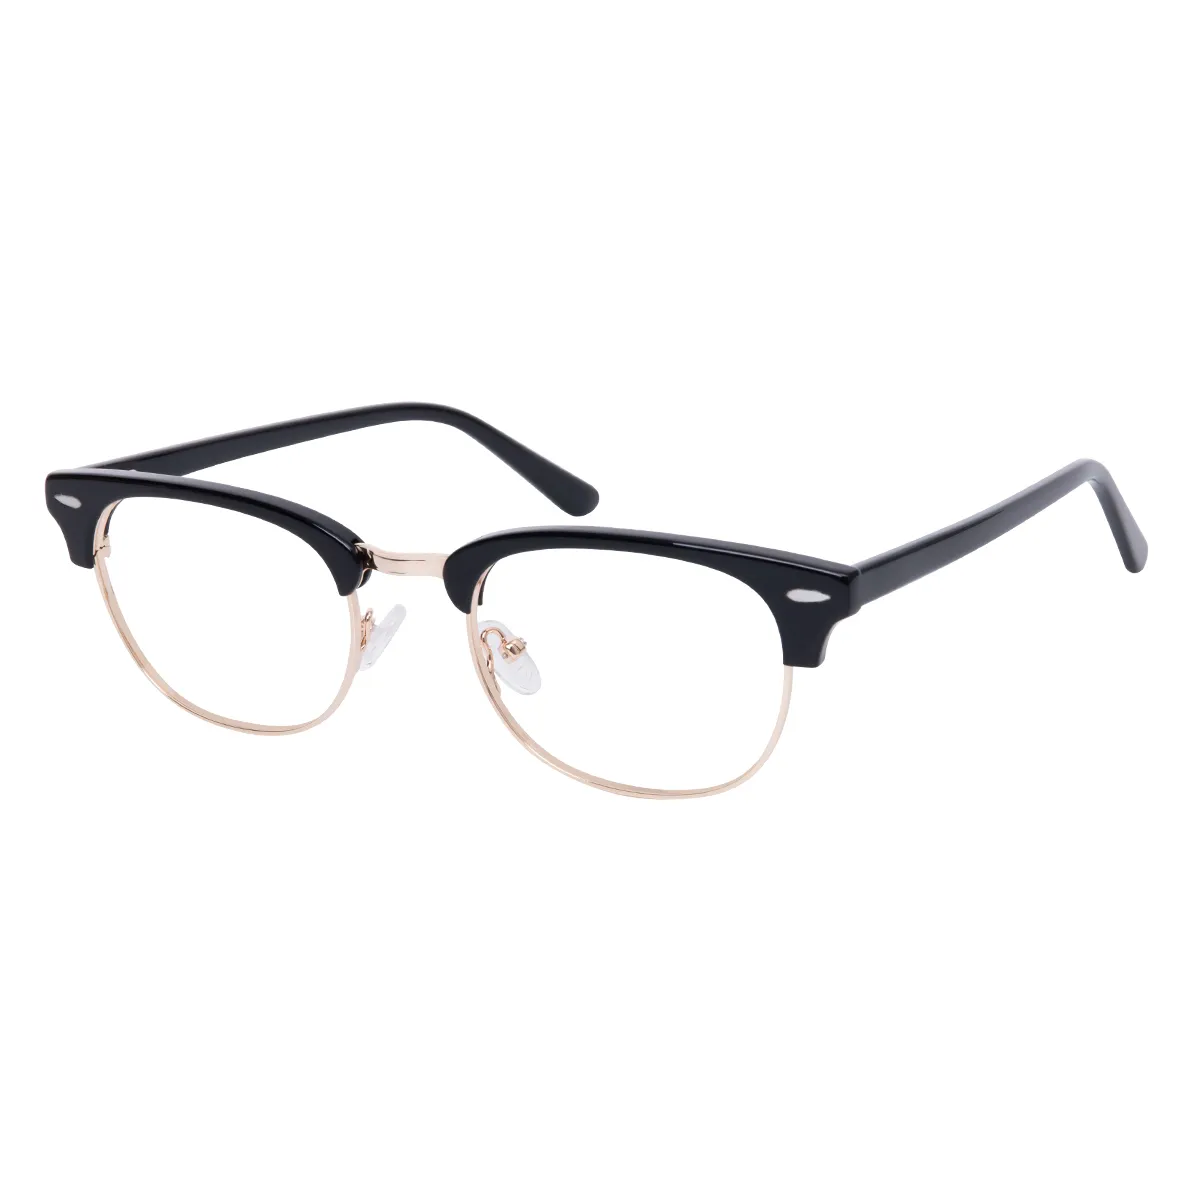 Andres - Browline Black-Gold Glasses for Men & Women